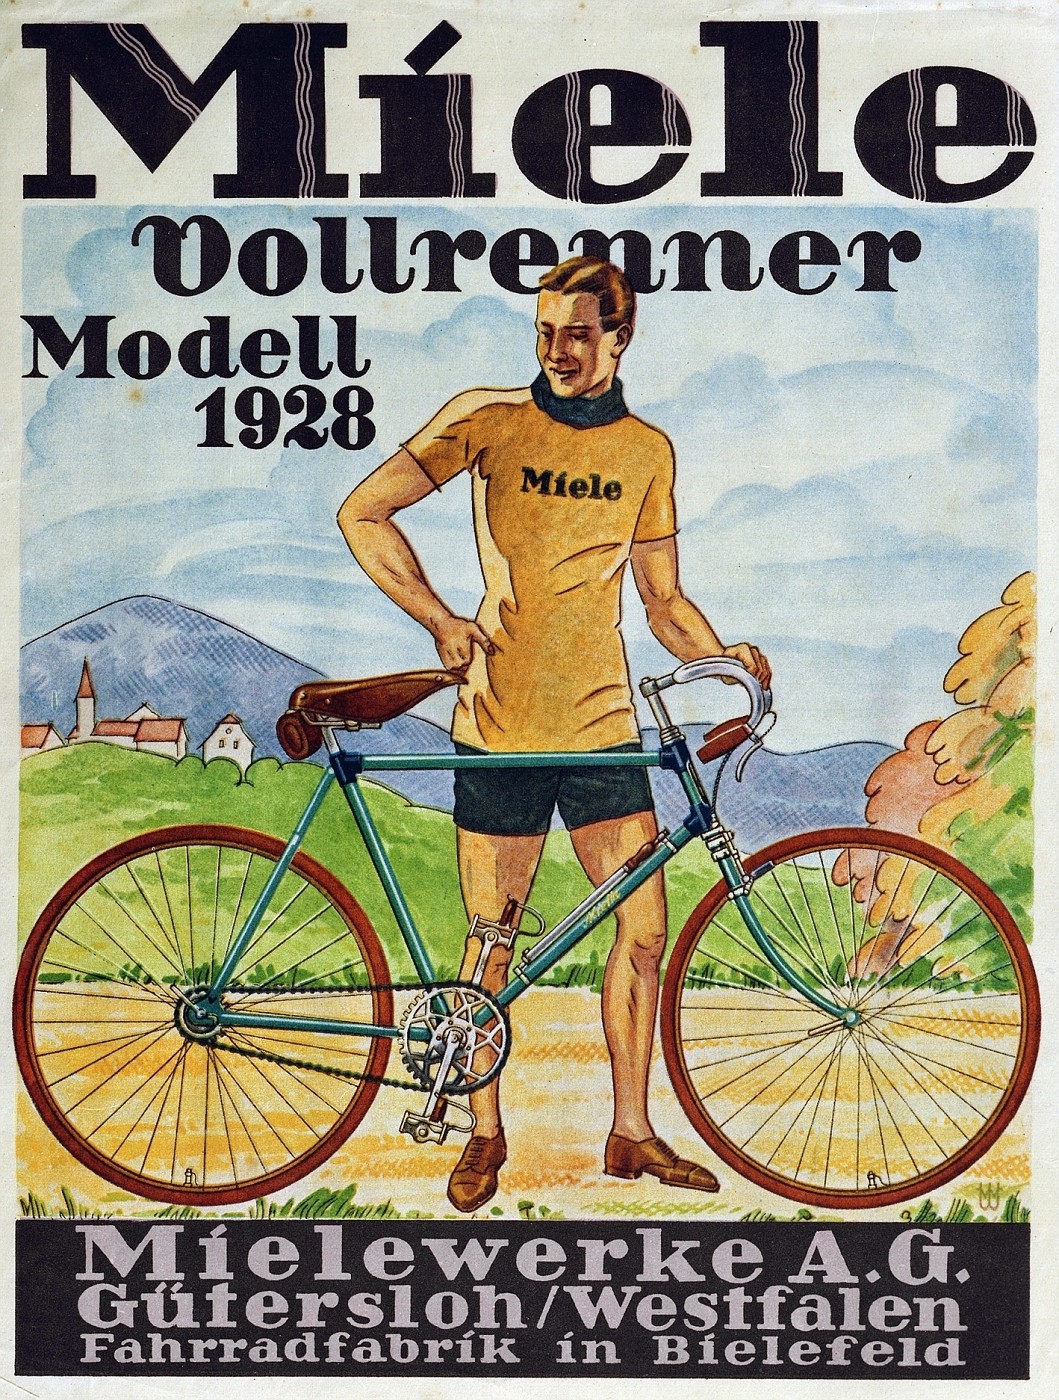 Miele Vollrenner 1928